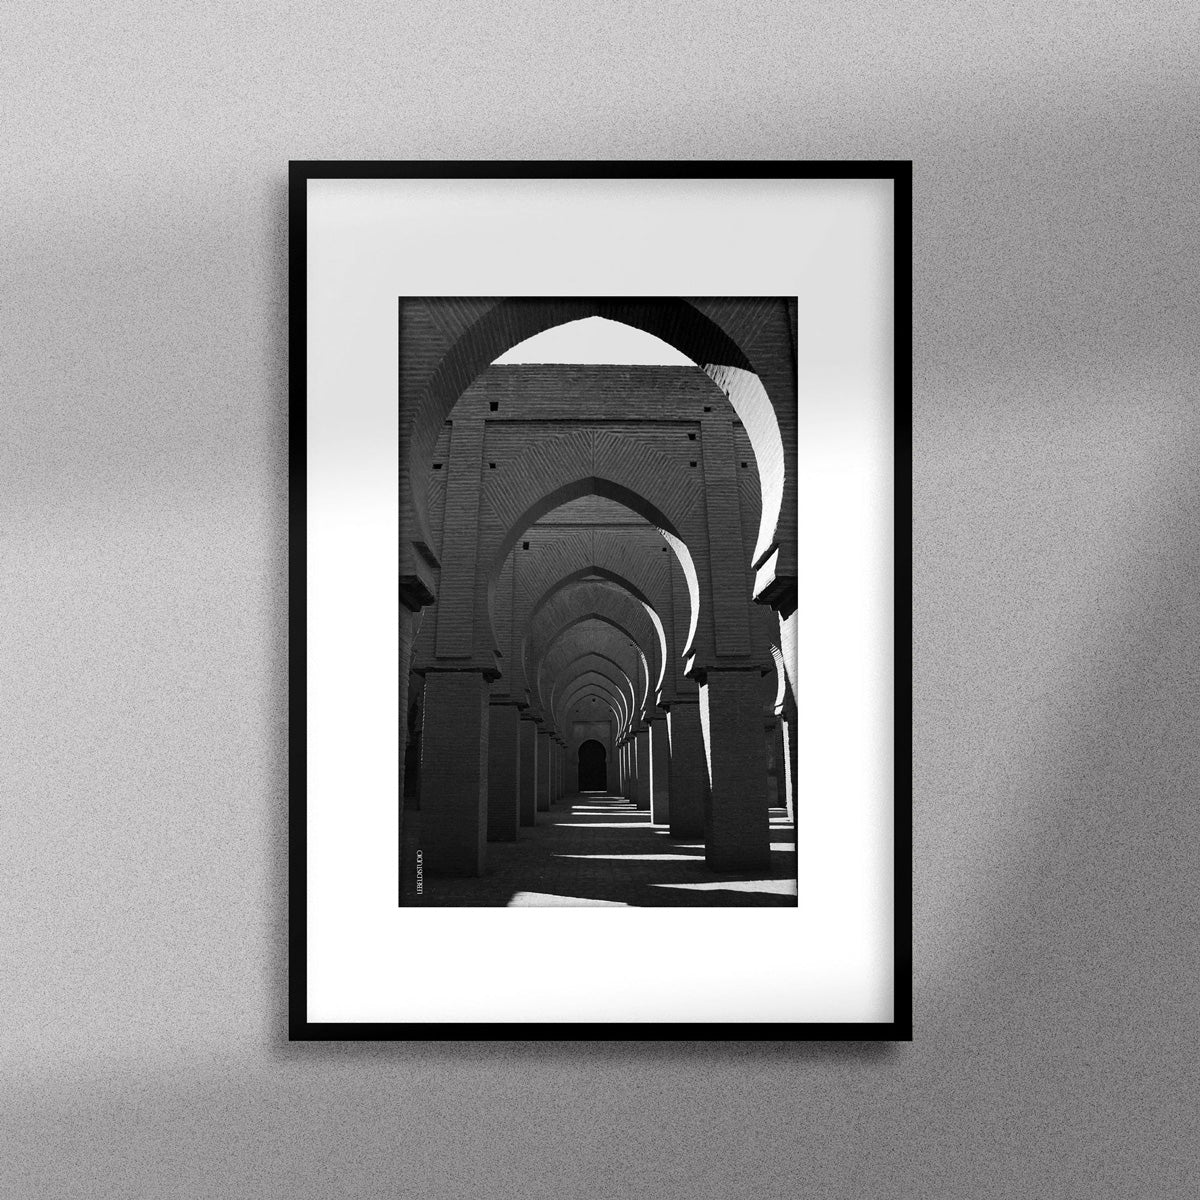 Tableau décoratif en noir et blanc de la Mosquée Tinmel, encadré dans un cadre noir - Format A3.